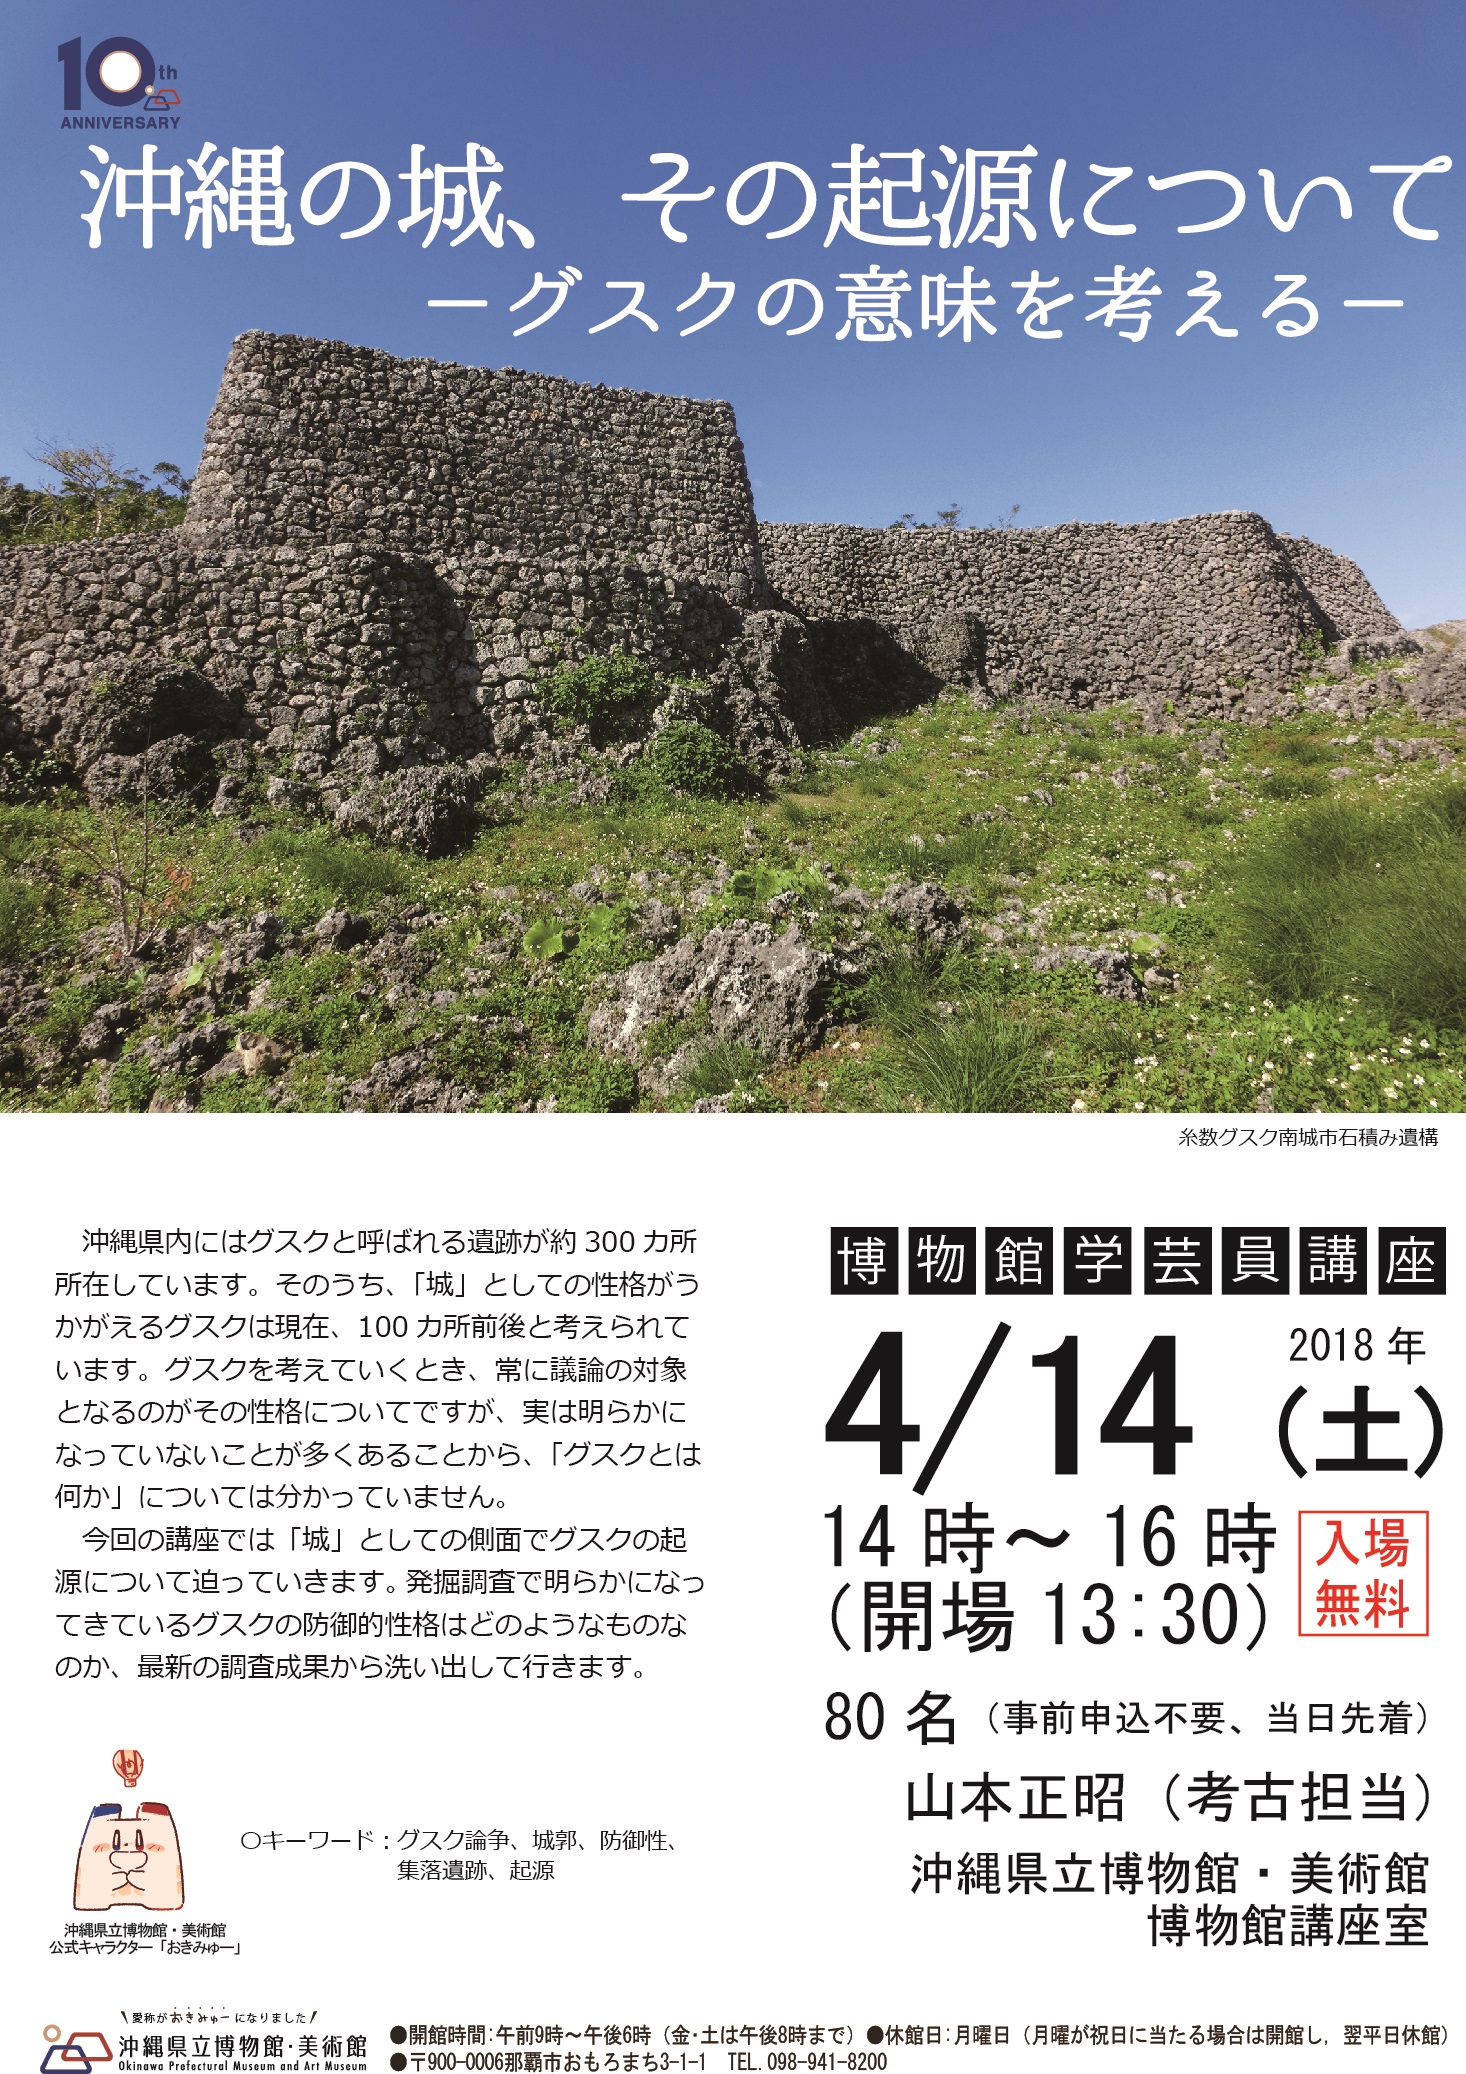 博物館学芸員講座「沖縄の城、その起源について-グスクの意味を考える-」